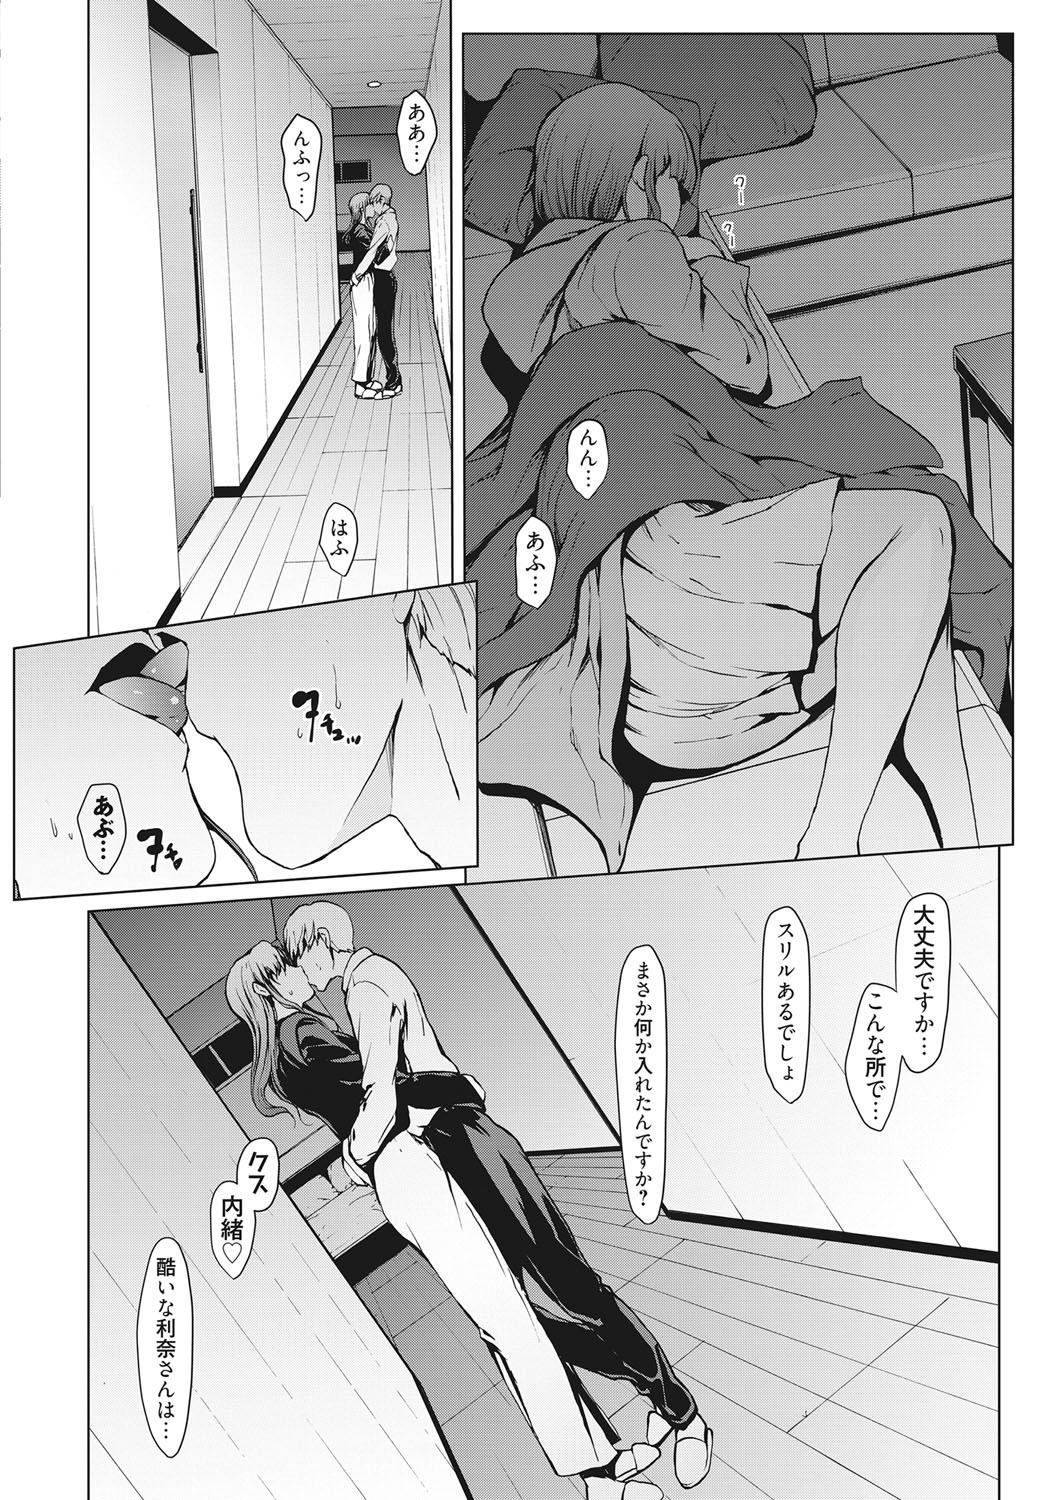 Gayfuck Web Manga Bangaichi Vol. 17 Nylon - Page 5